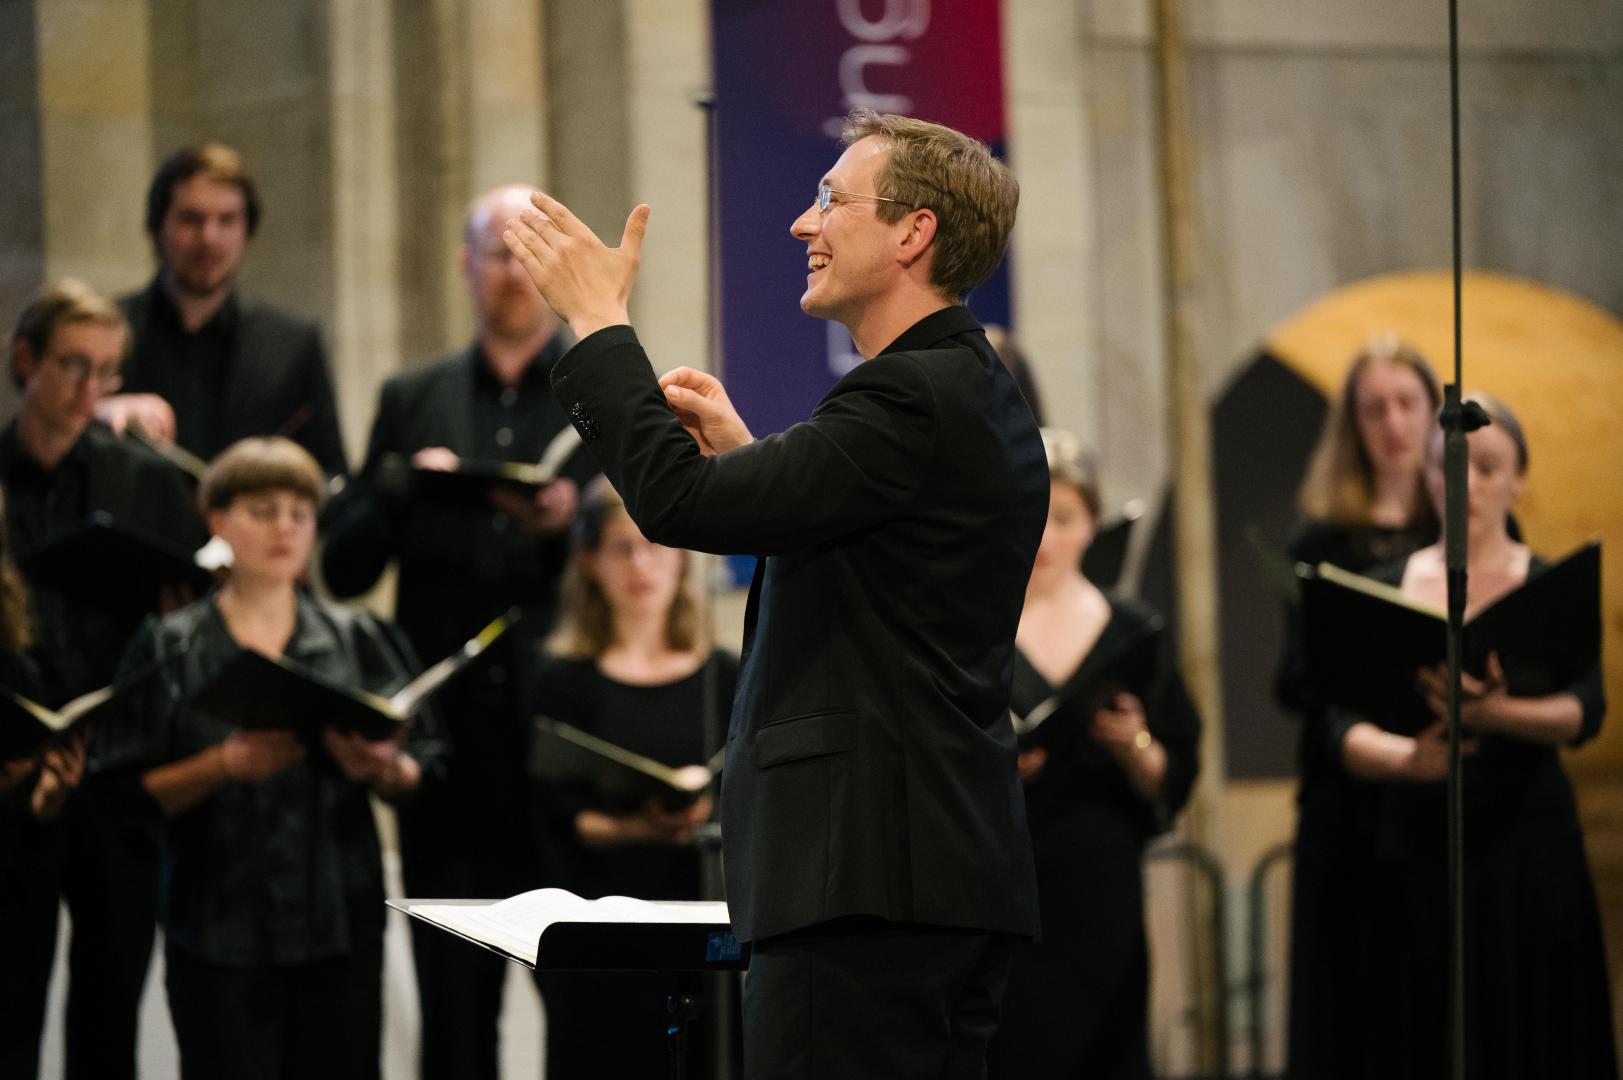 Florian Lohmann dirigiert den Kammerchor während des Konzerts im Kloster Eberbach.